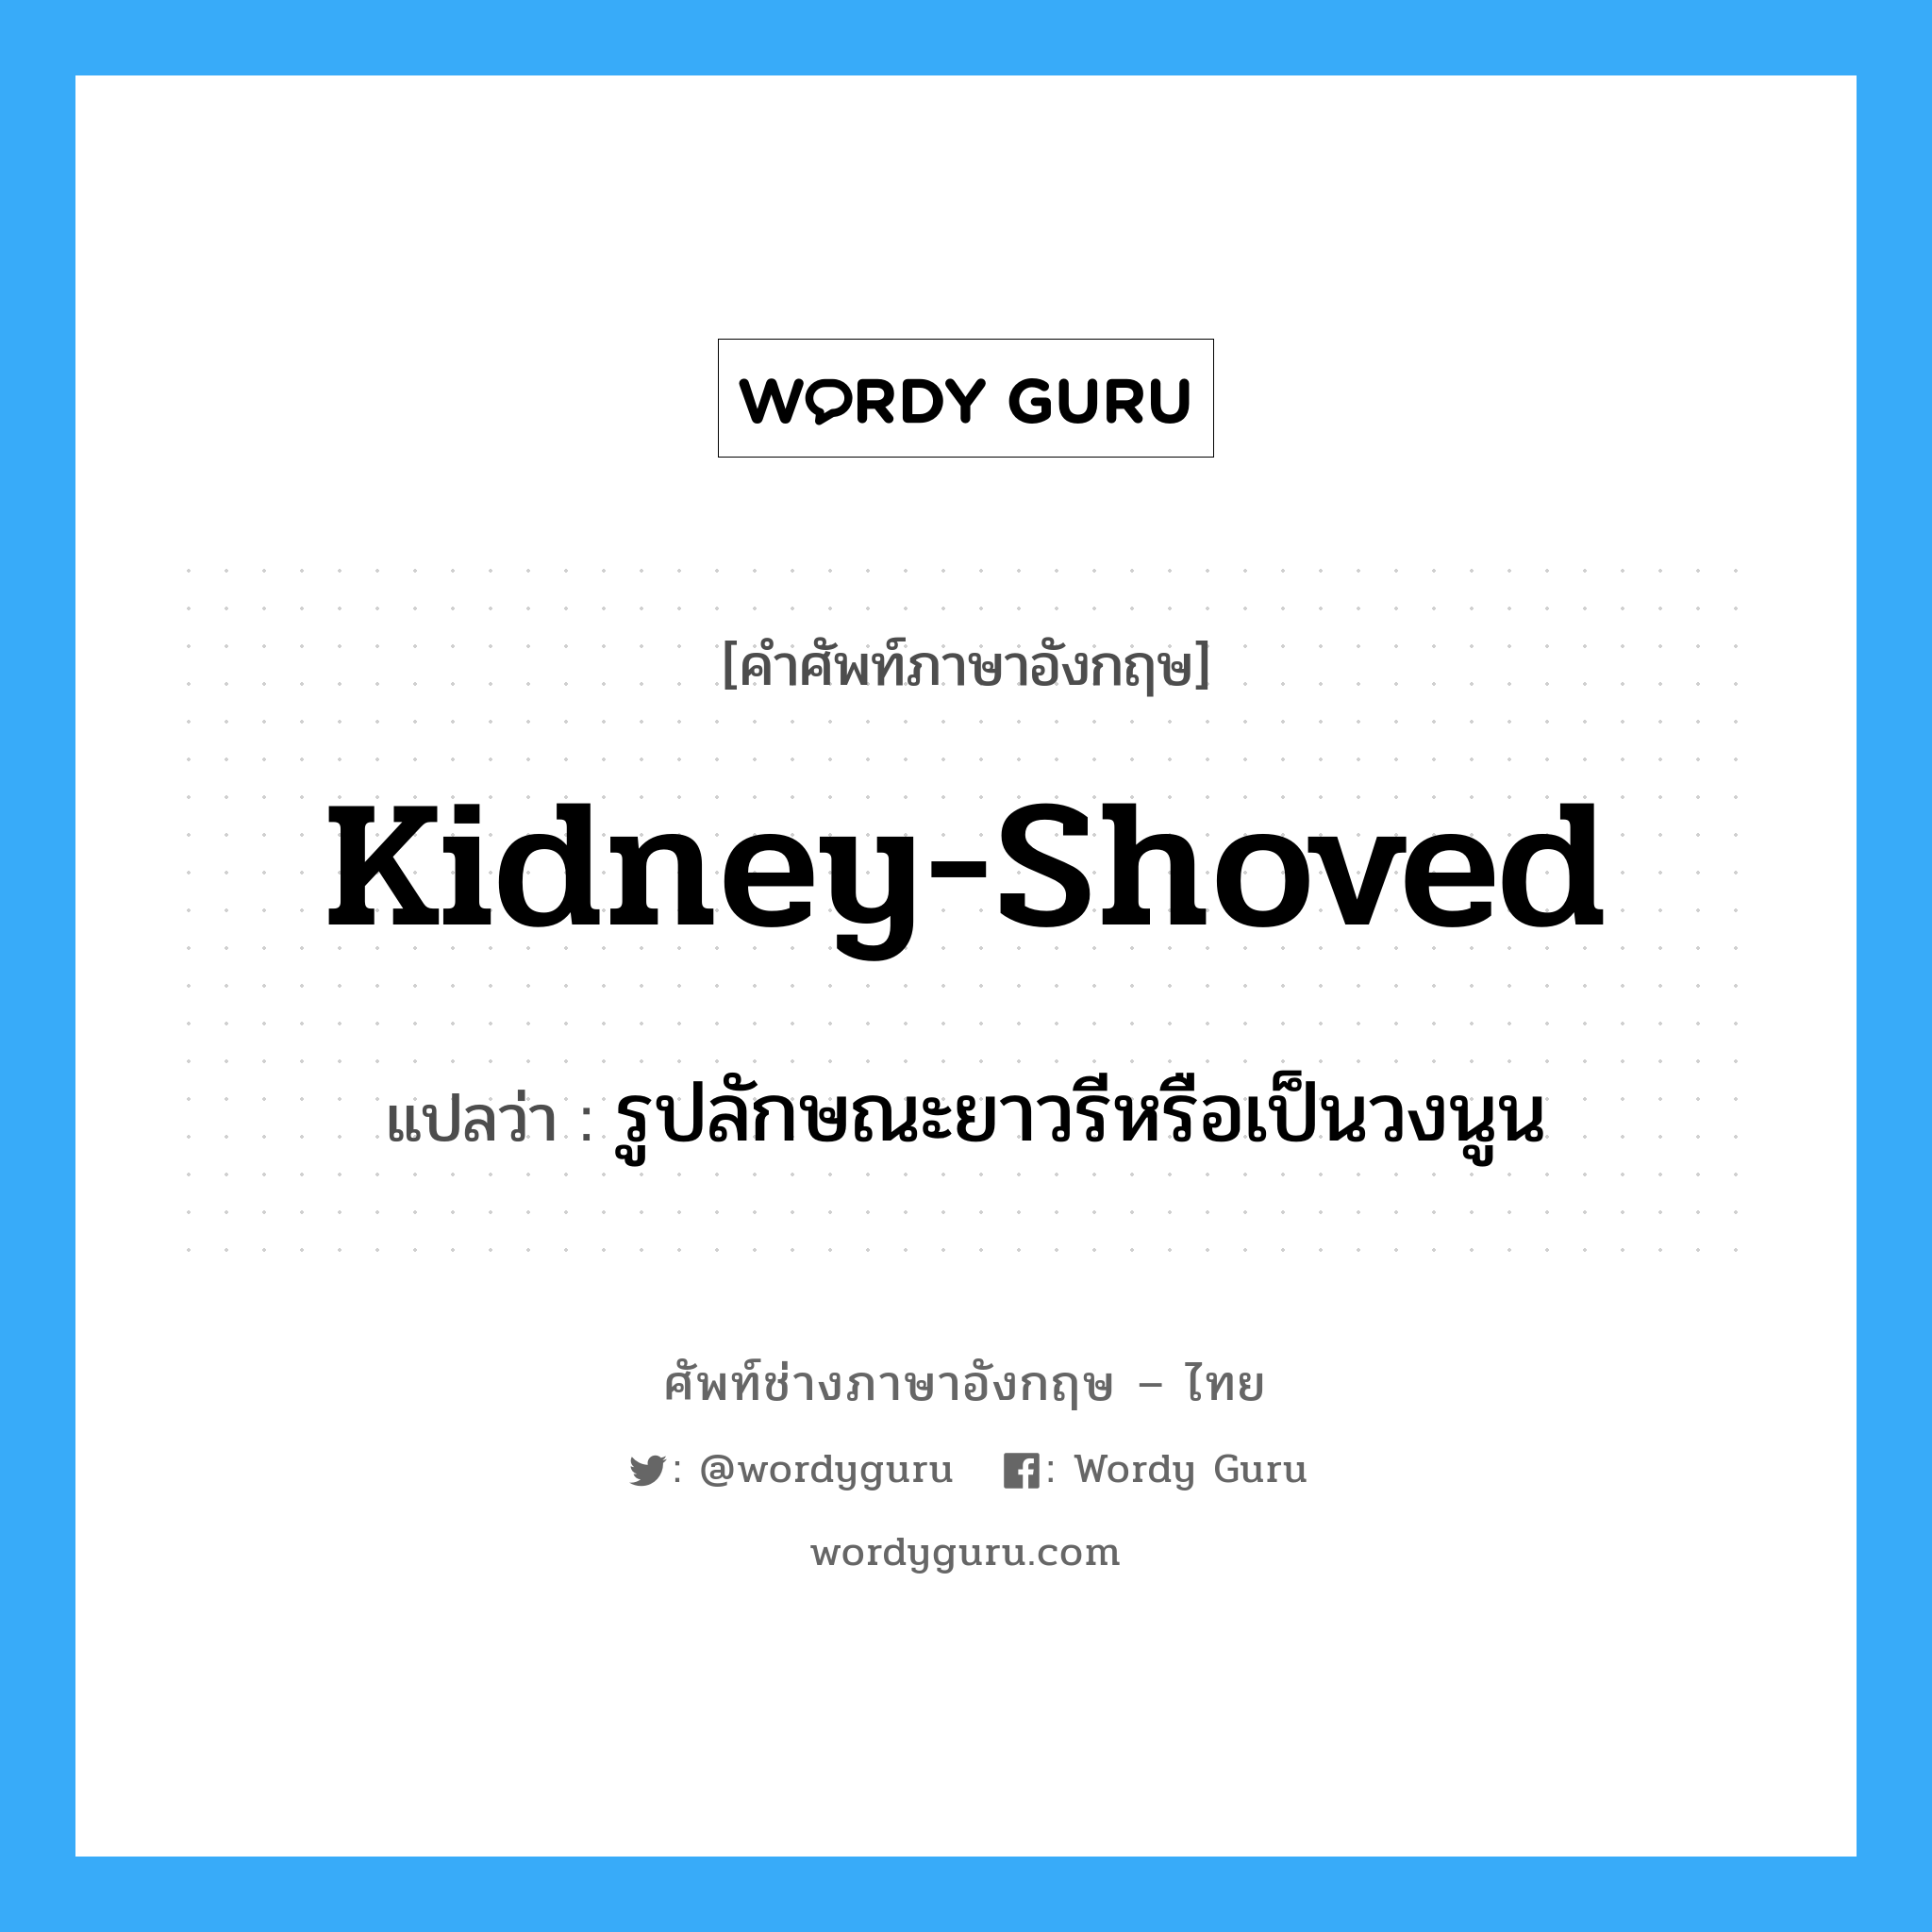 รูปลักษณะยาวรีหรือเป็นวงนูน ภาษาอังกฤษ?, คำศัพท์ช่างภาษาอังกฤษ - ไทย รูปลักษณะยาวรีหรือเป็นวงนูน คำศัพท์ภาษาอังกฤษ รูปลักษณะยาวรีหรือเป็นวงนูน แปลว่า kidney-shoved